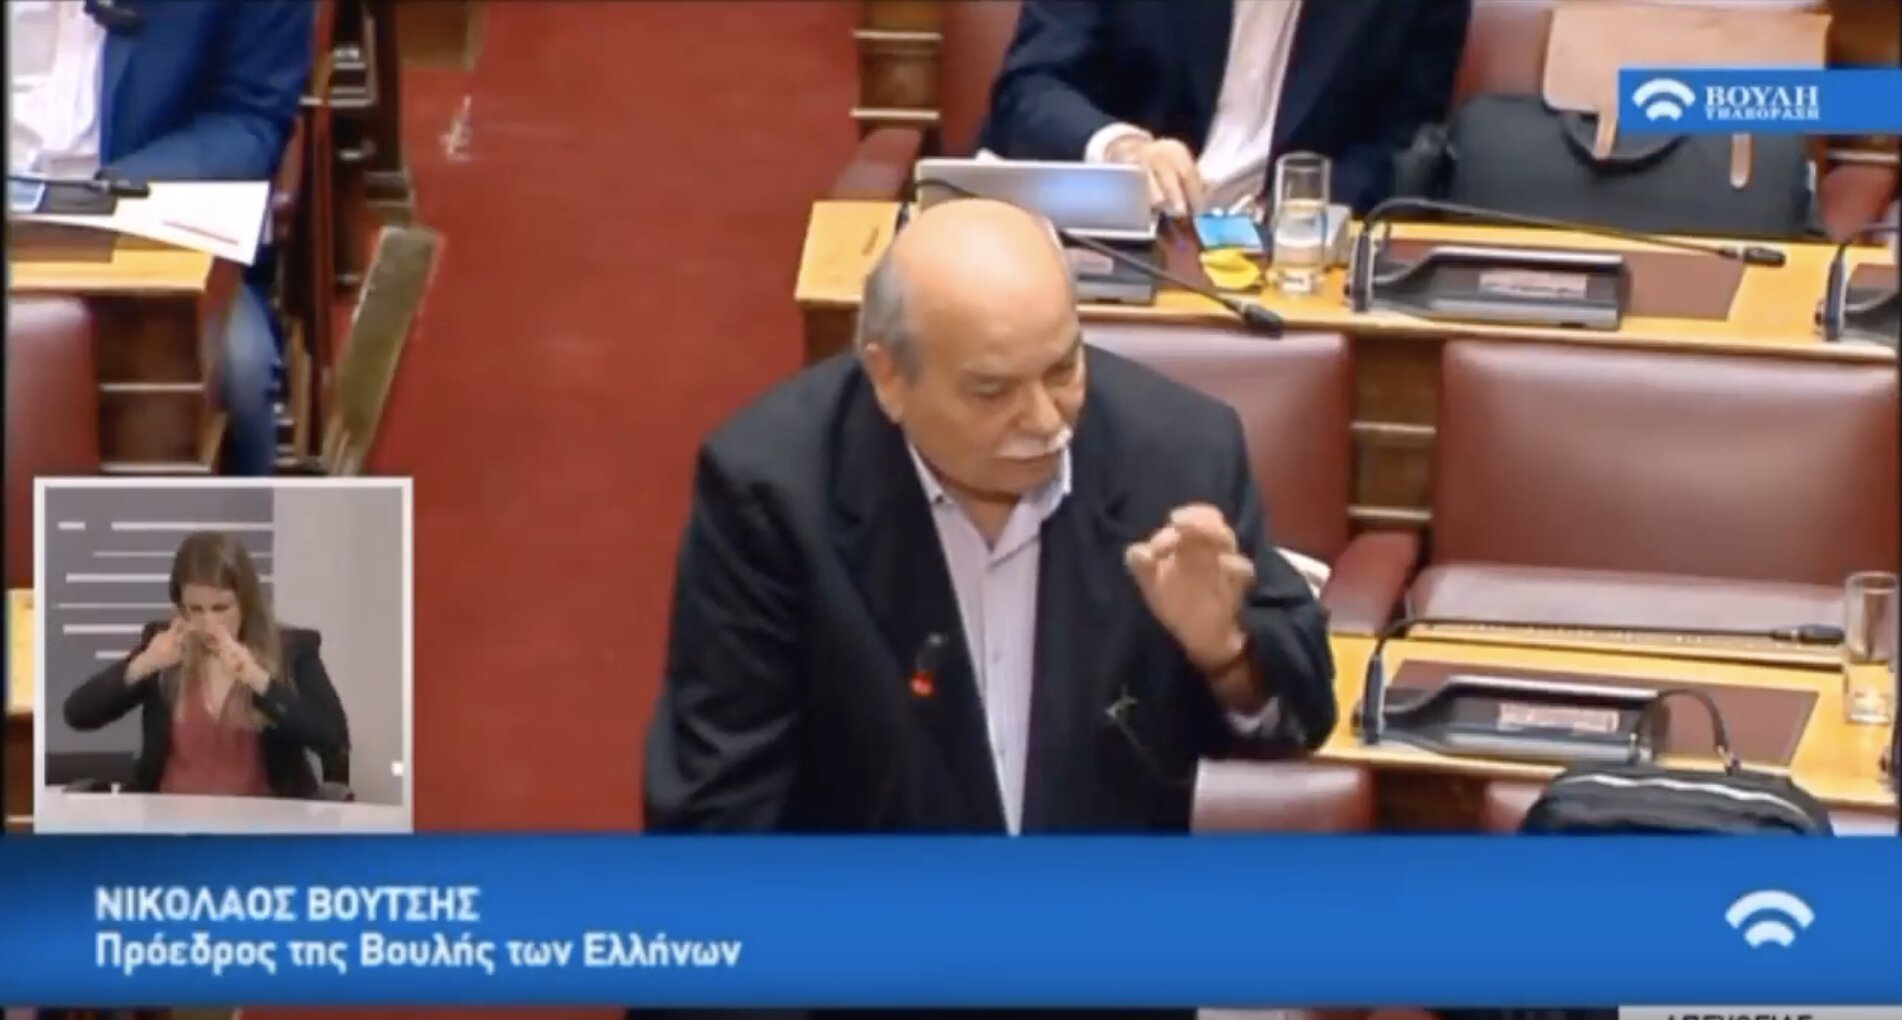 Βούτσης: Οι Έλληνες Βουλευτές δεν είναι ανάγκη να δηλώνουν στη Βουλή για πατρίδα τους την Ελλάδα